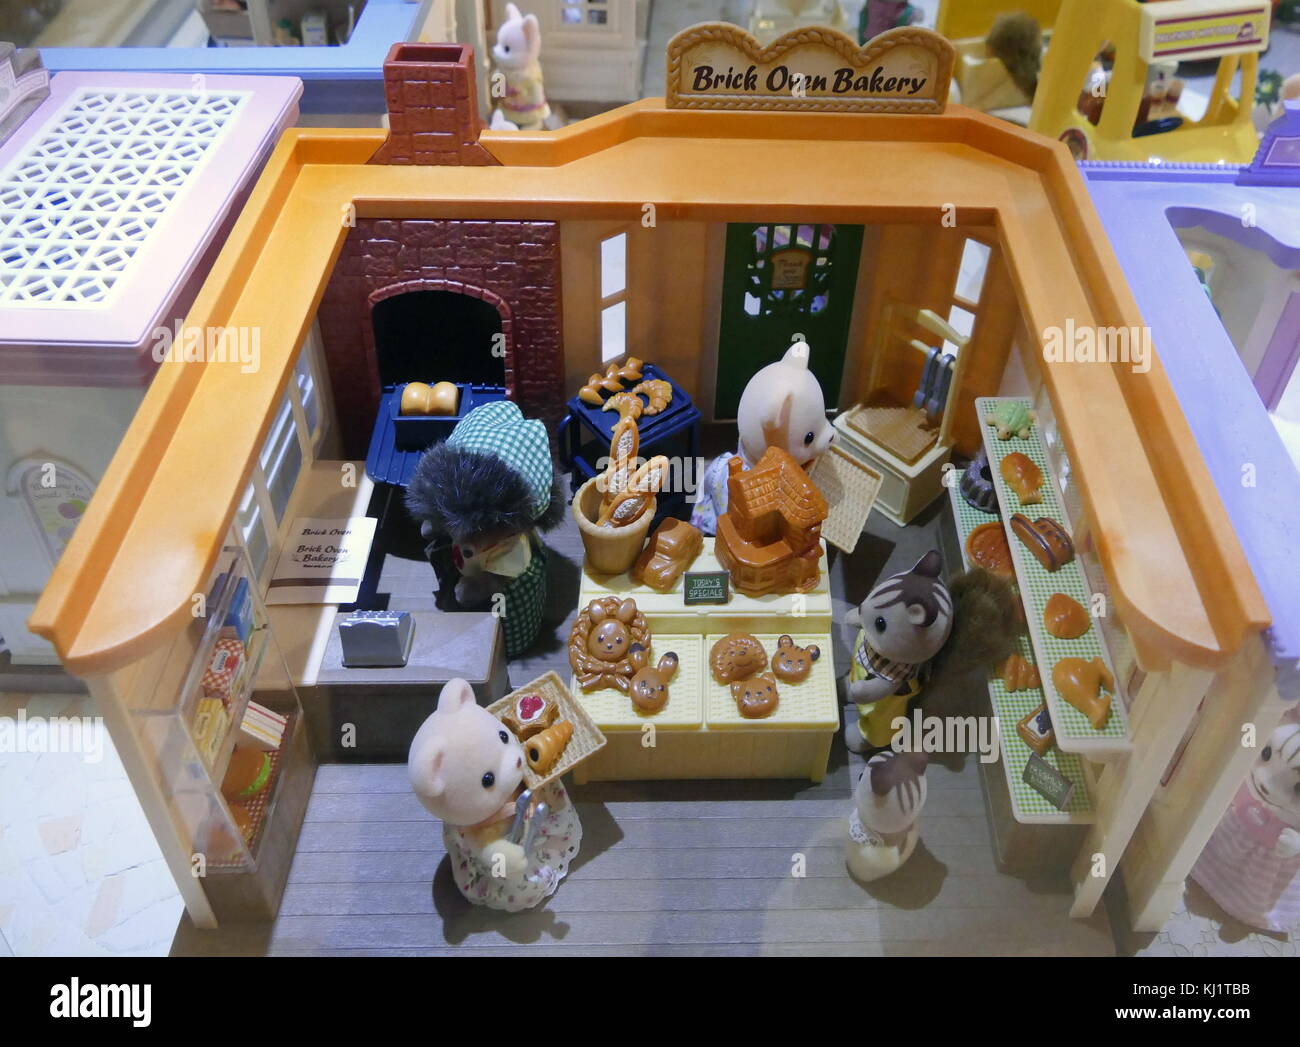 Famiglia di Sylvania bambole case e negozi basati sulle famiglie di Sylvania è una linea di oggetti collezionabili antropomorfi figurines animali realizzati in plastica floccata. creato da il gioco giapponese di epoca della società nel 1985 e distribuite in tutto il mondo da un certo numero di aziende. Foto Stock